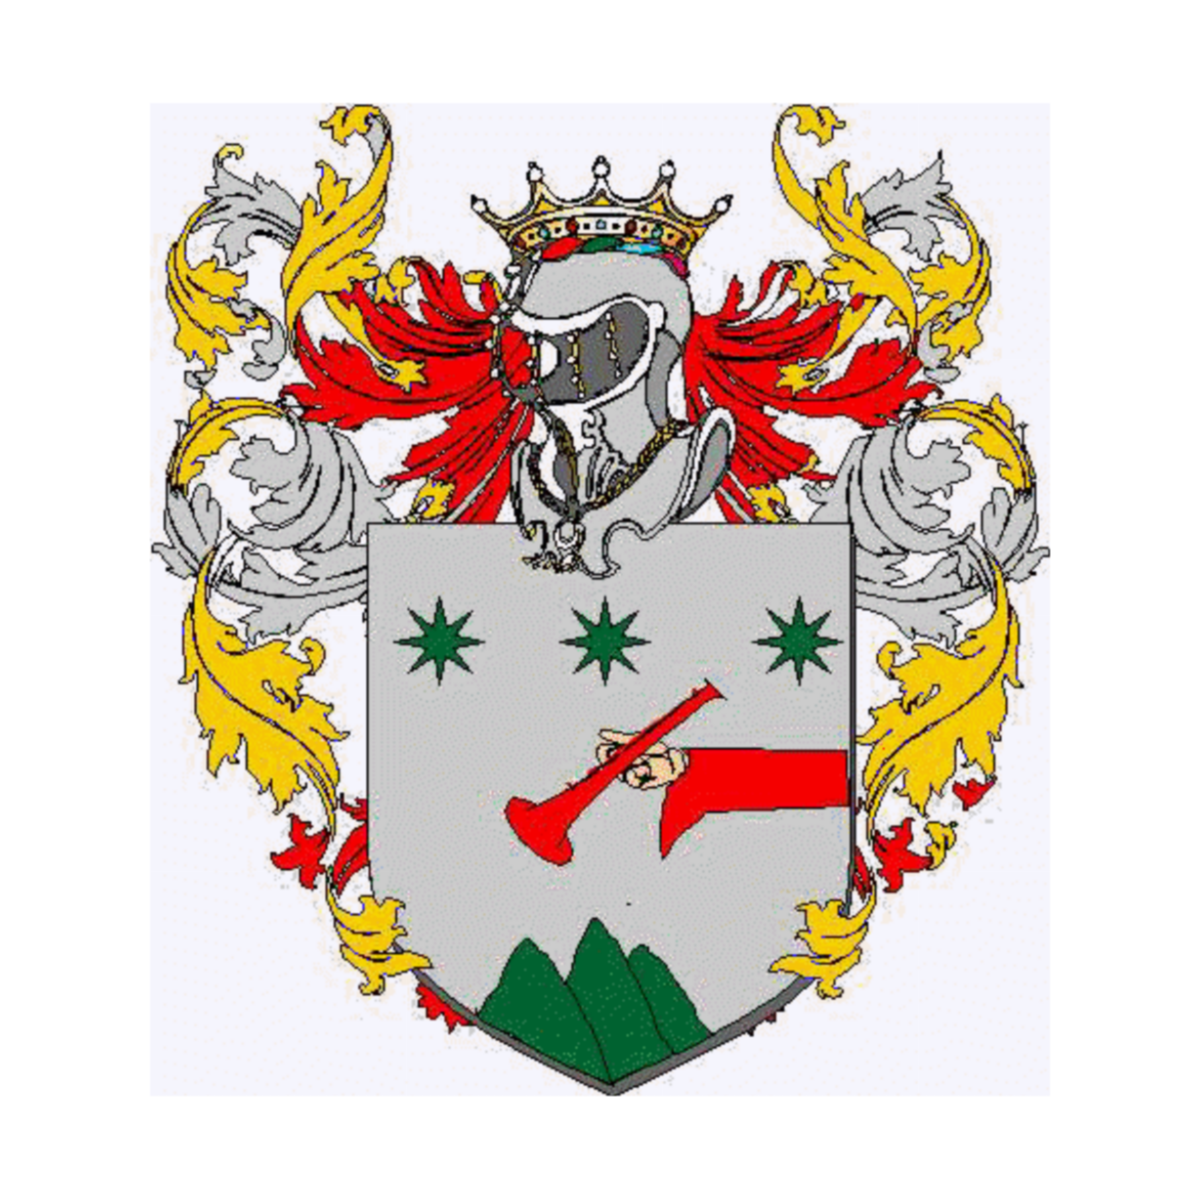 Coat of arms of familySordina, Bordina,Cordina,Lordina,Sordino